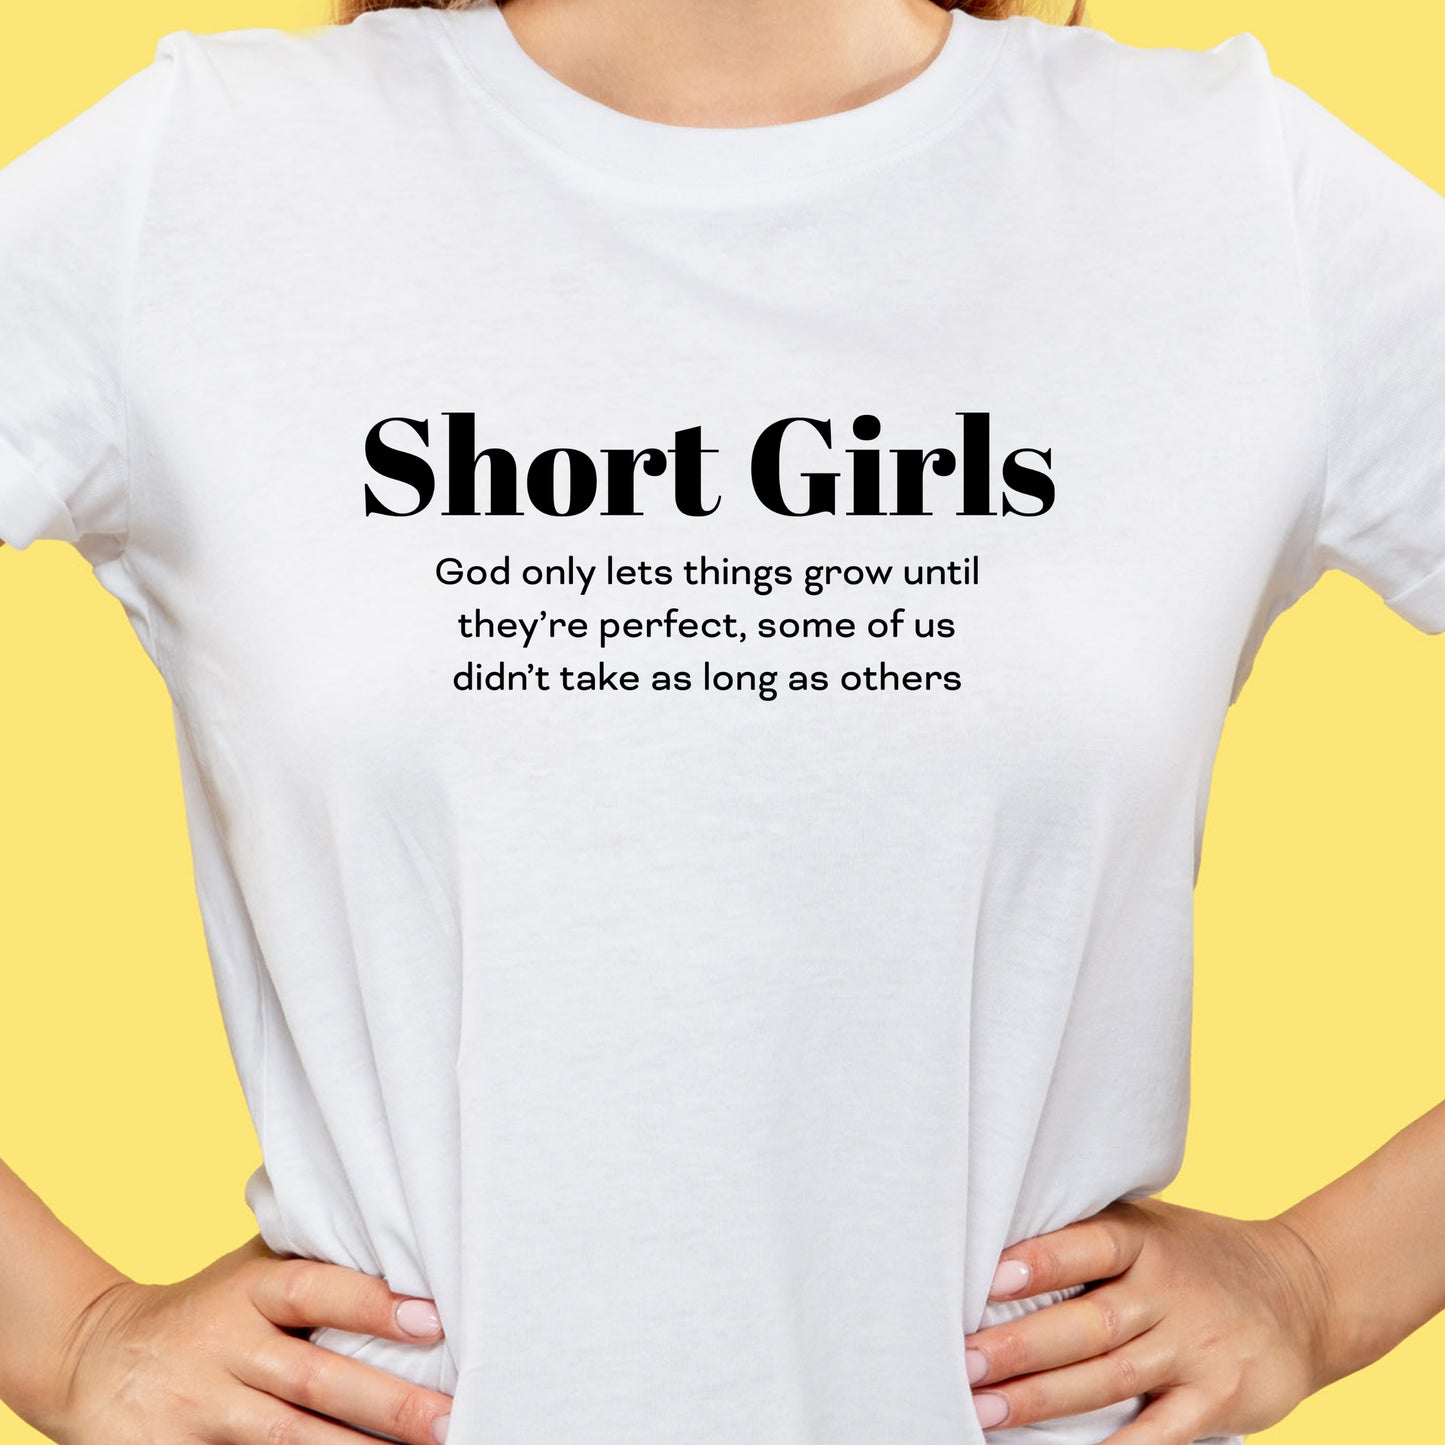 Funny T-Shirt For Short Girls T-Shirt For Sentimental Girl Shirt For Motivational Girl Shirt For Gift For Short Girl